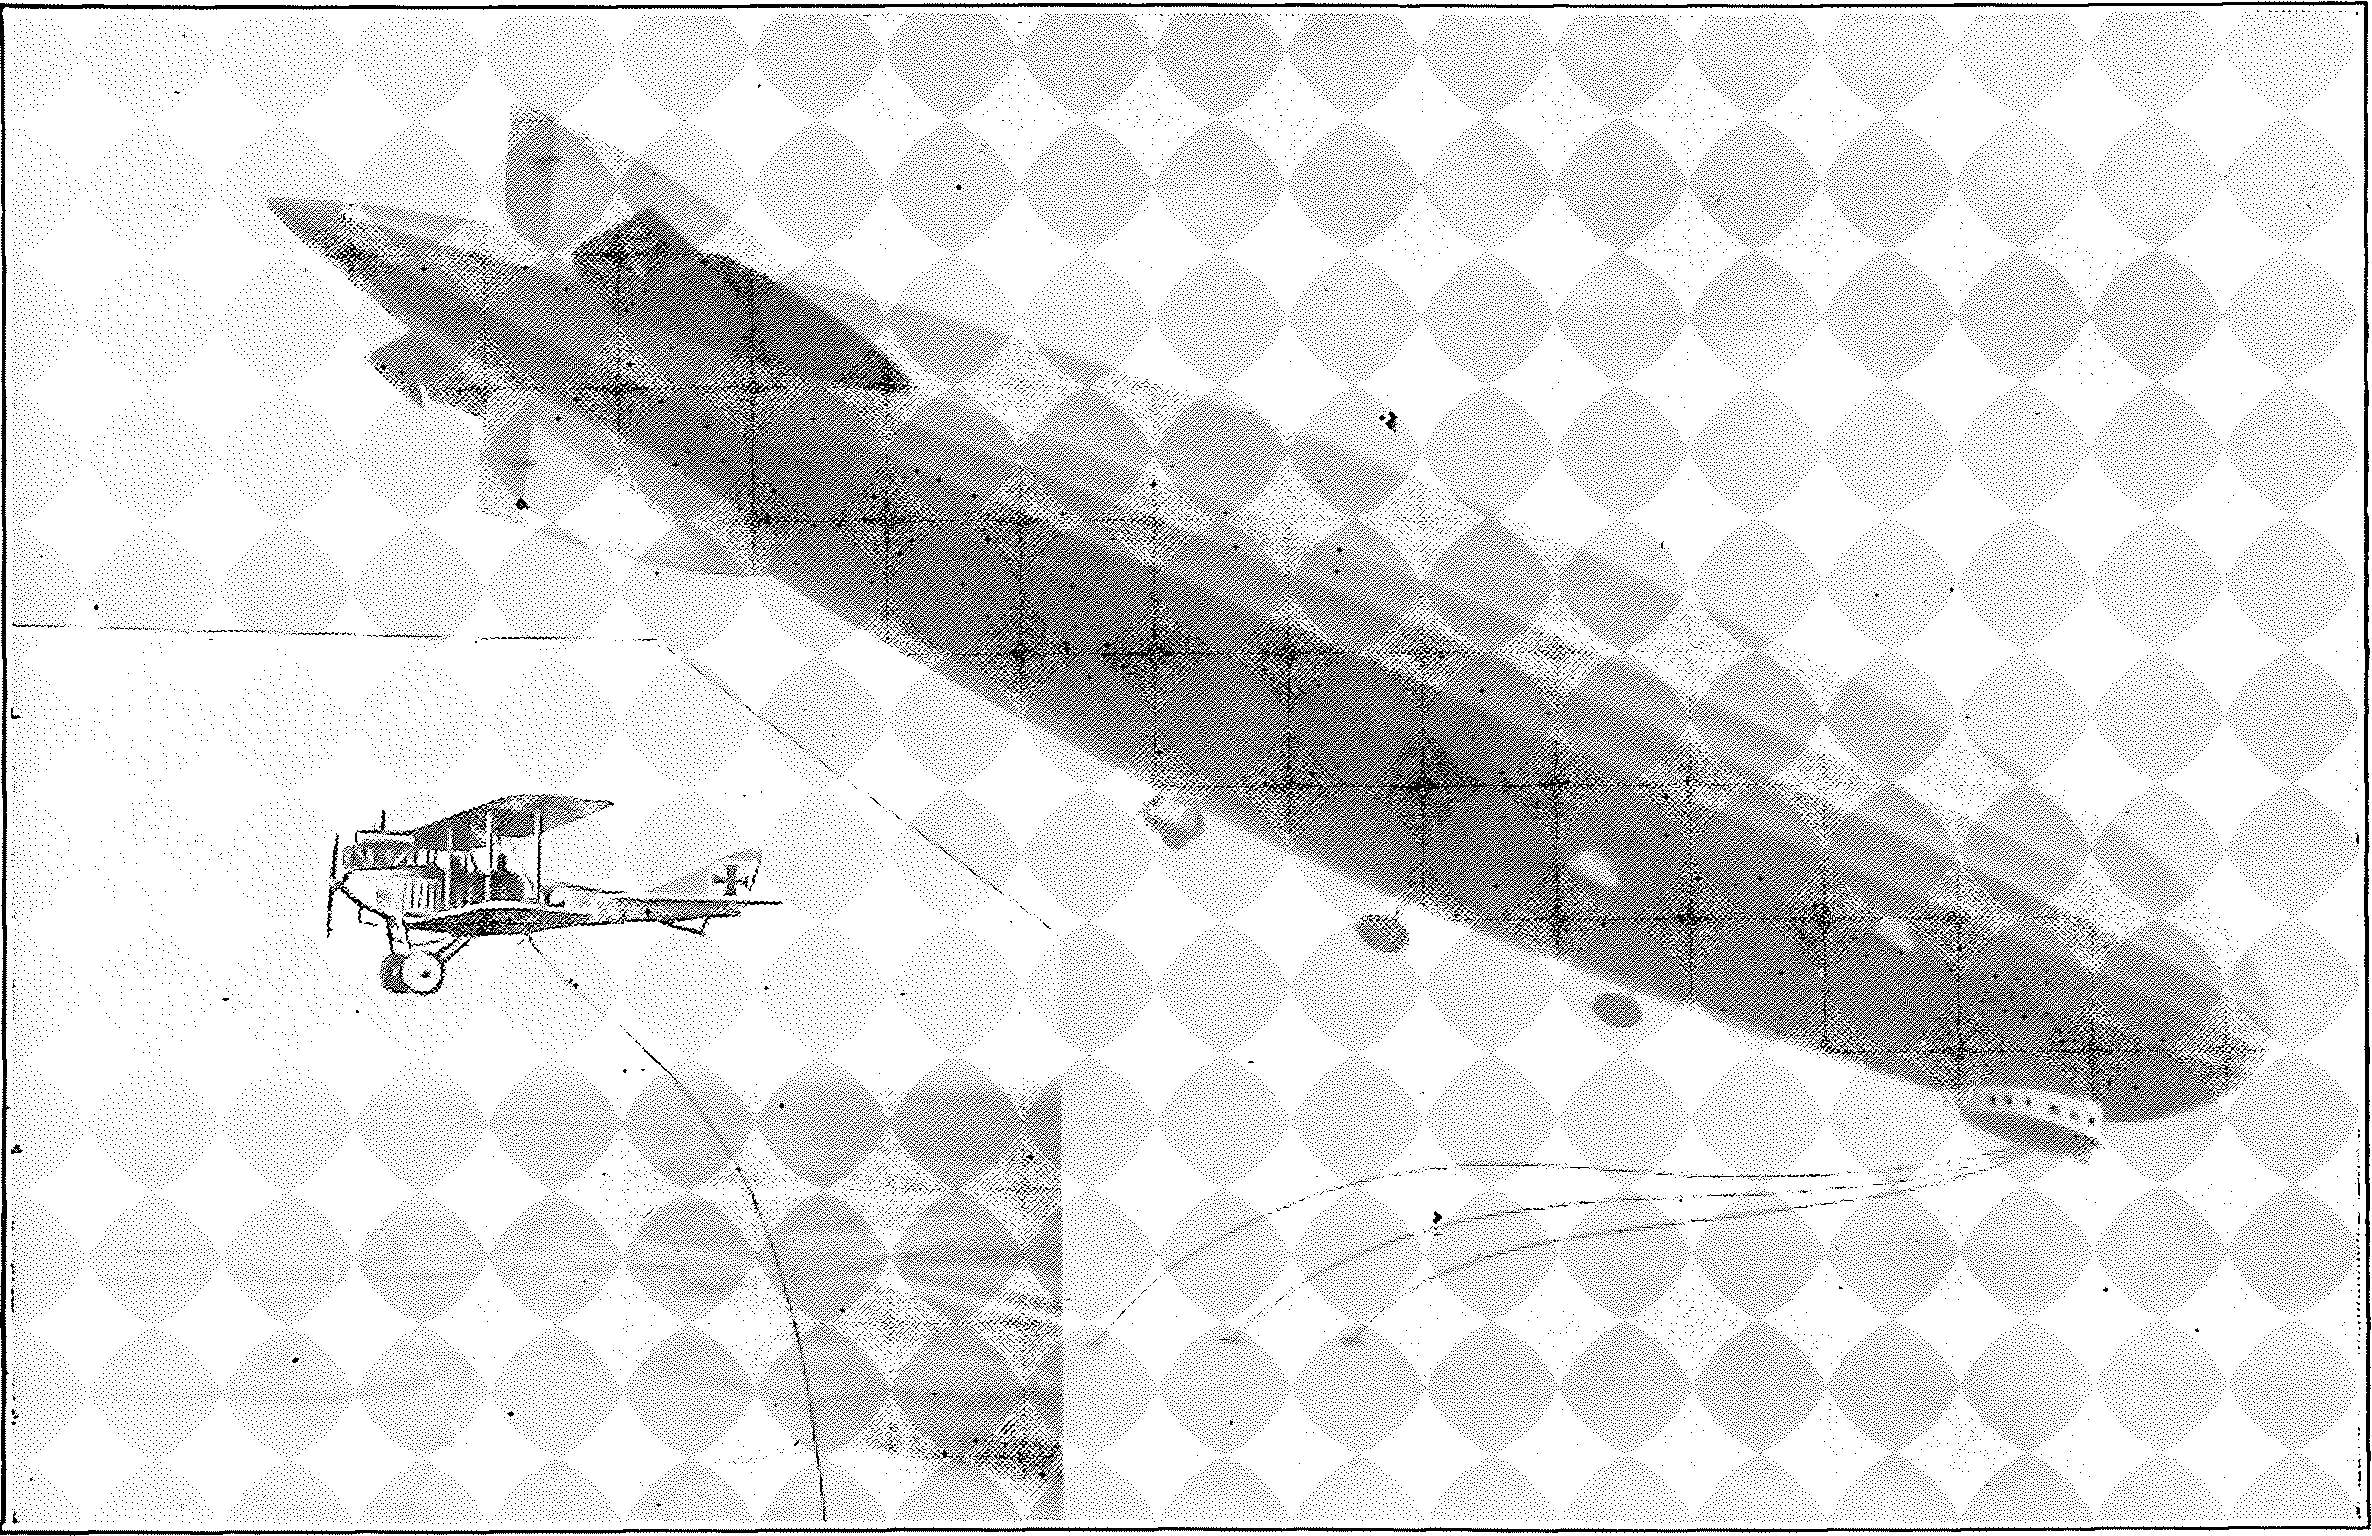 Segelflug, Motorflug und Modellflug sowie Luftfahrt und Luftverkehr im Deutschen Reich (Weimarer Republik) im Jahre 1926